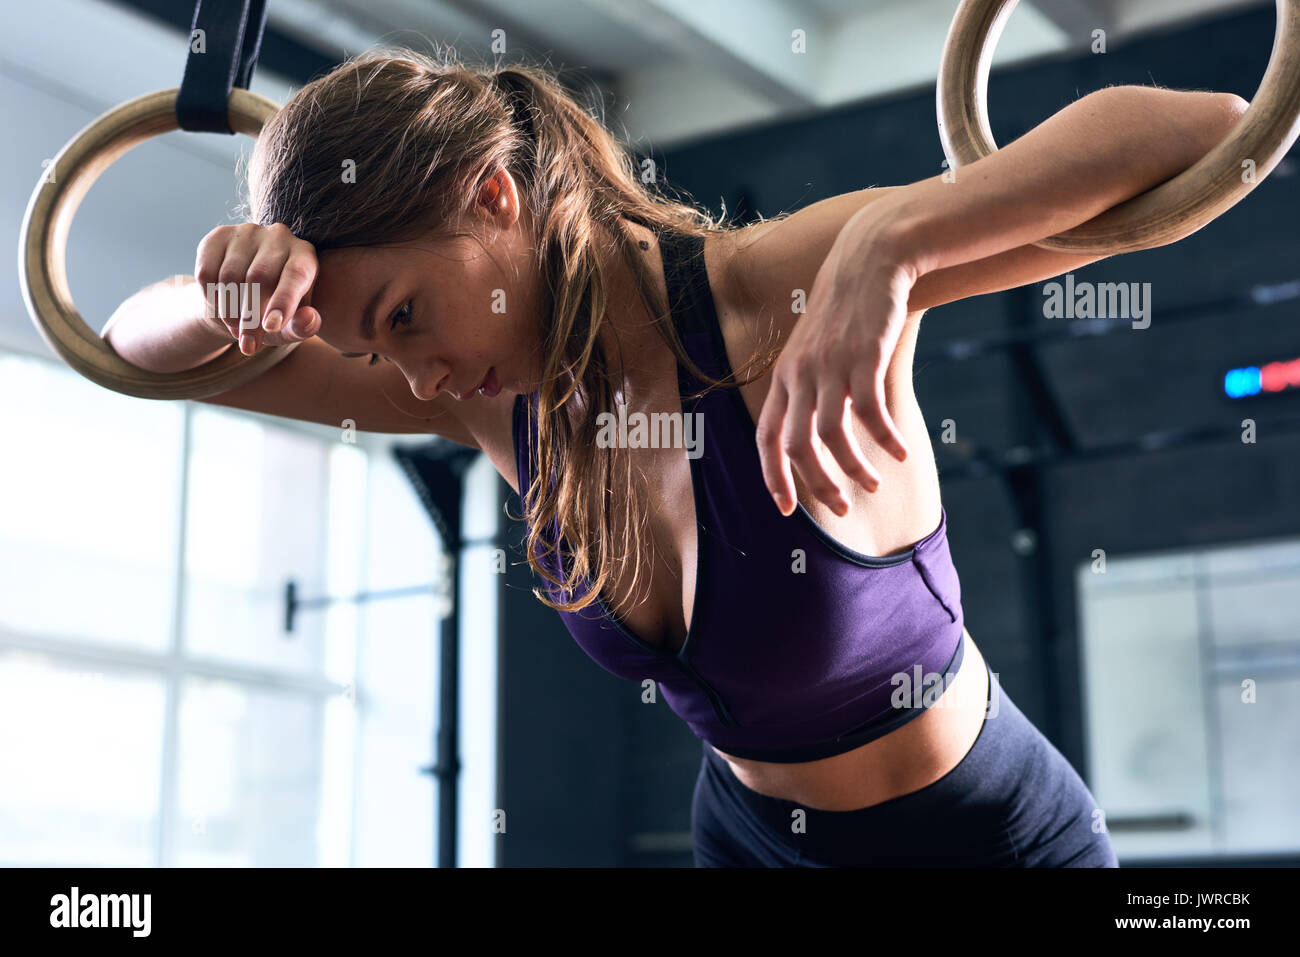 Porträt der jungen schönen Frau vom Training lehnte sich auf Gymnastik Ringe beim crossfit Workout im modernen Fitnessraum erschöpft Stockfoto